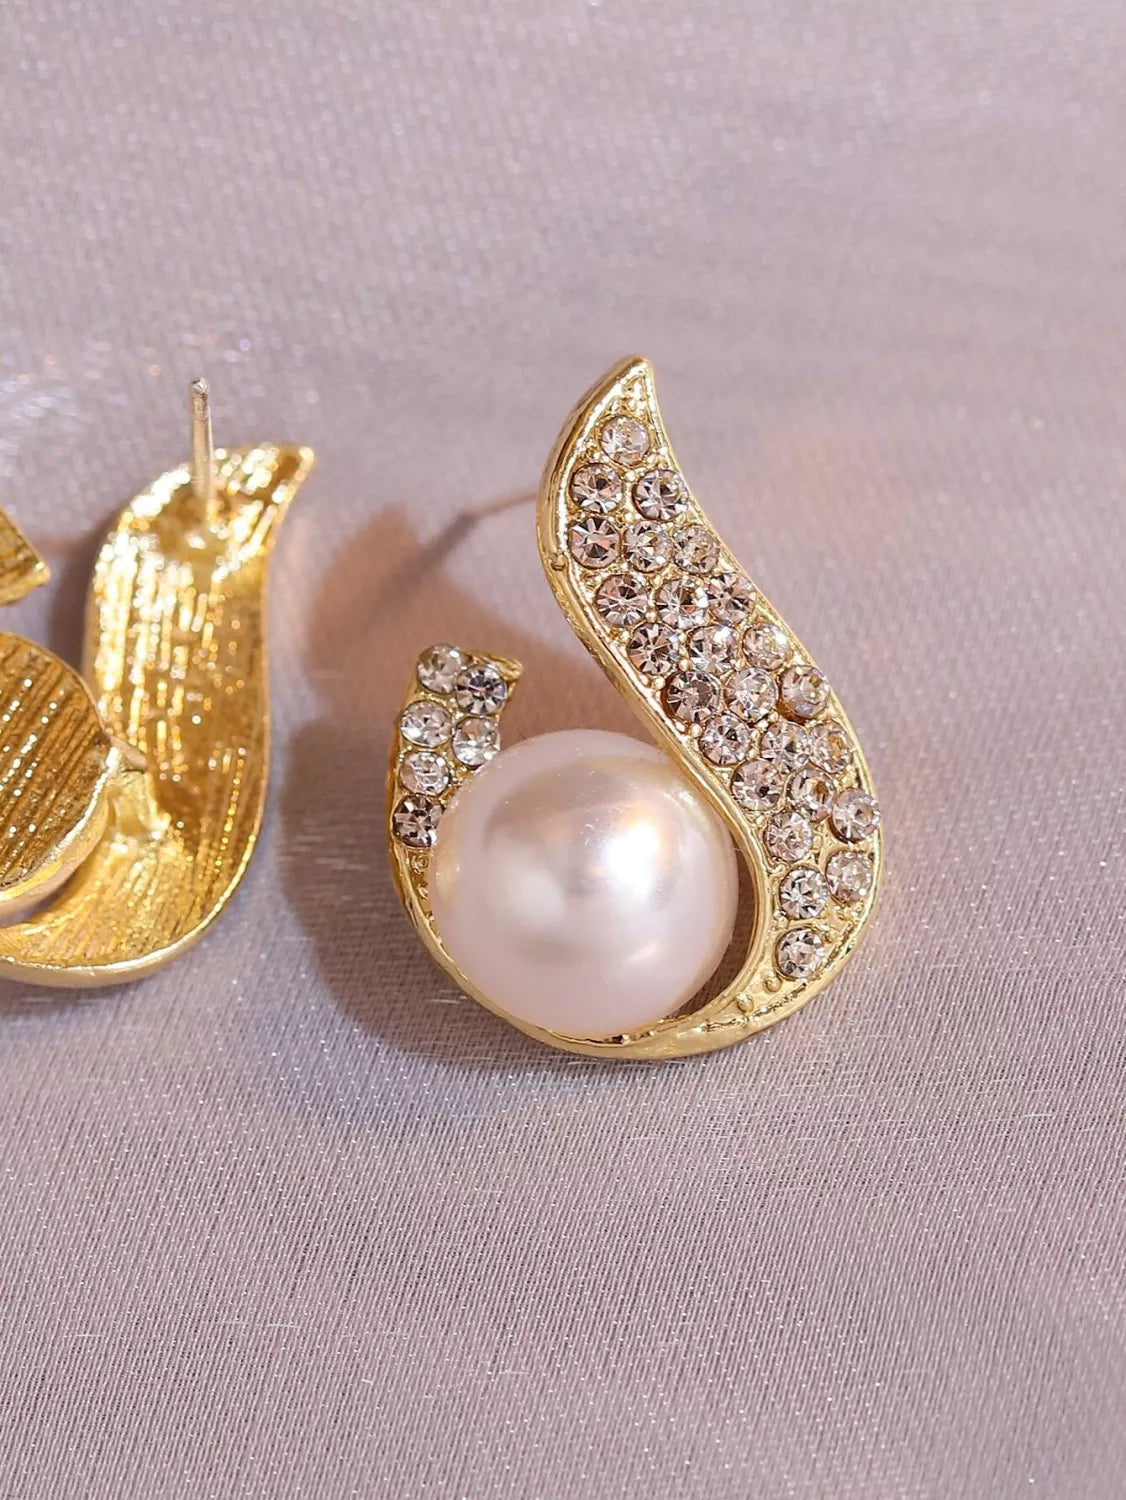 E7.Rhinestone & Faux Pearl Decor Stud Earrings - Elle Royal Jewelry